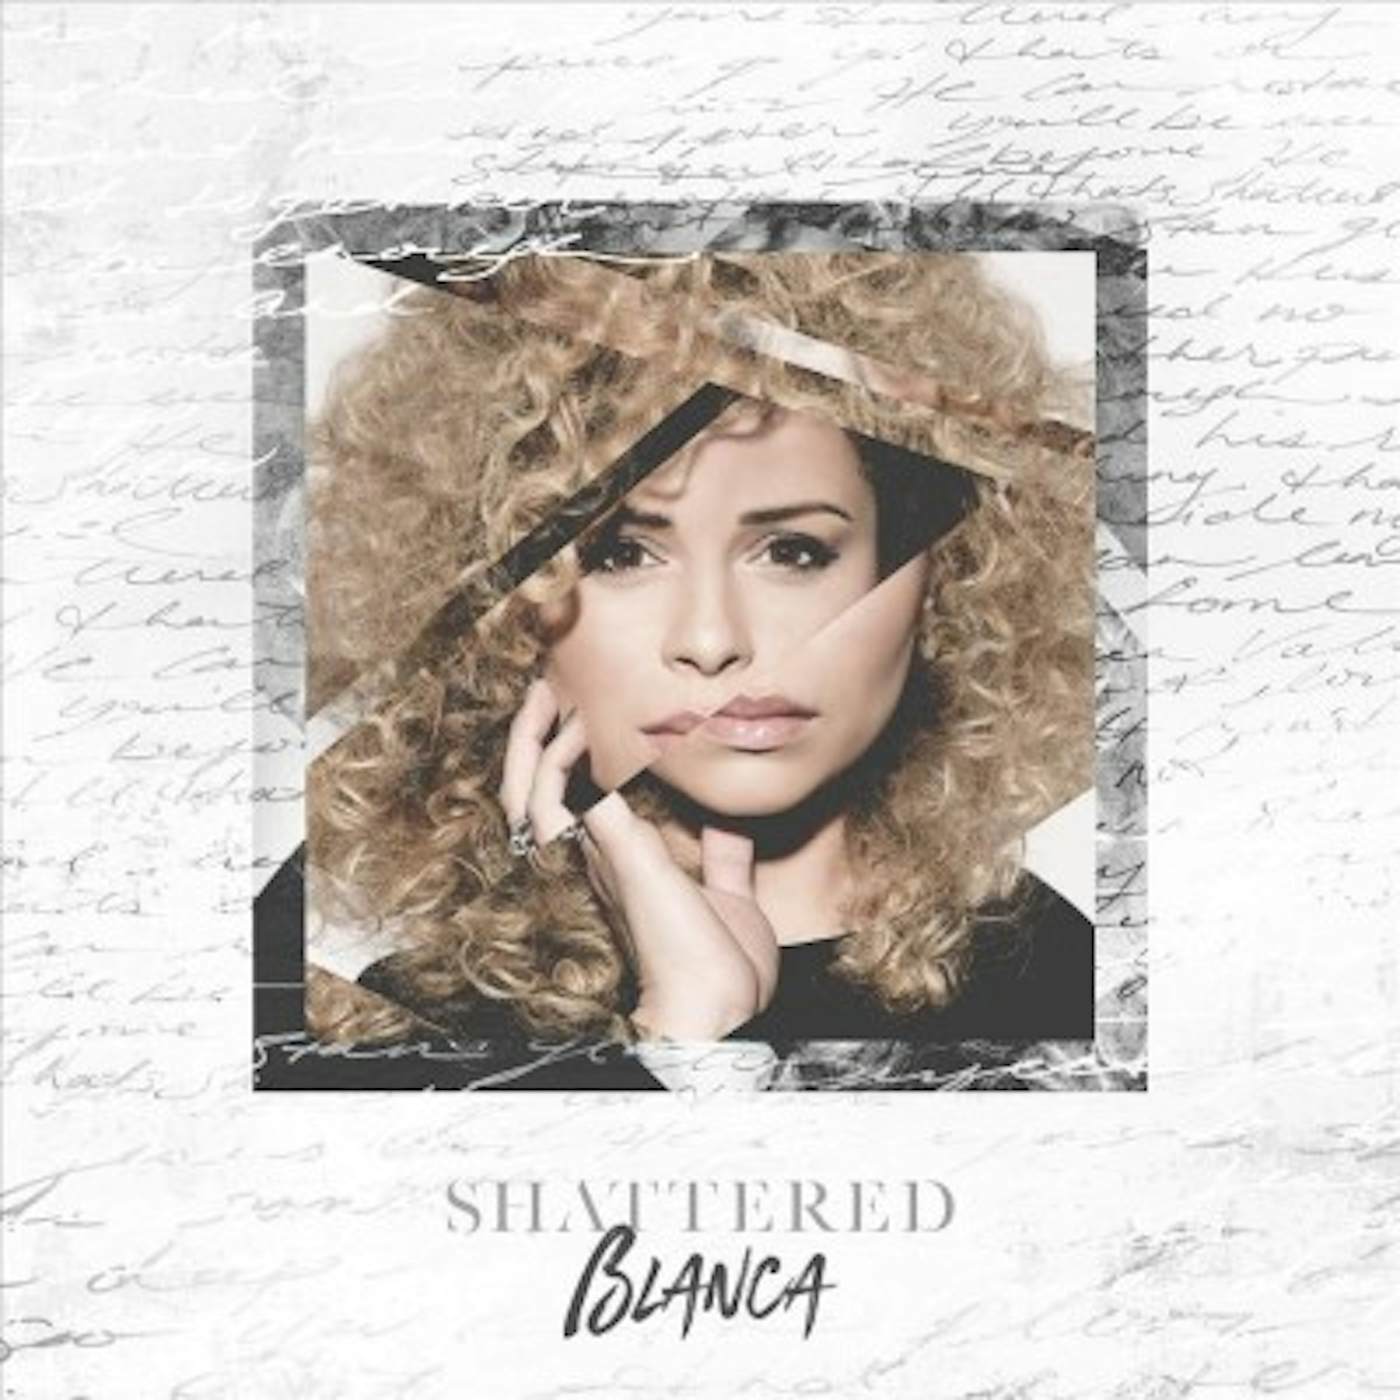 Blanca Shattered CD